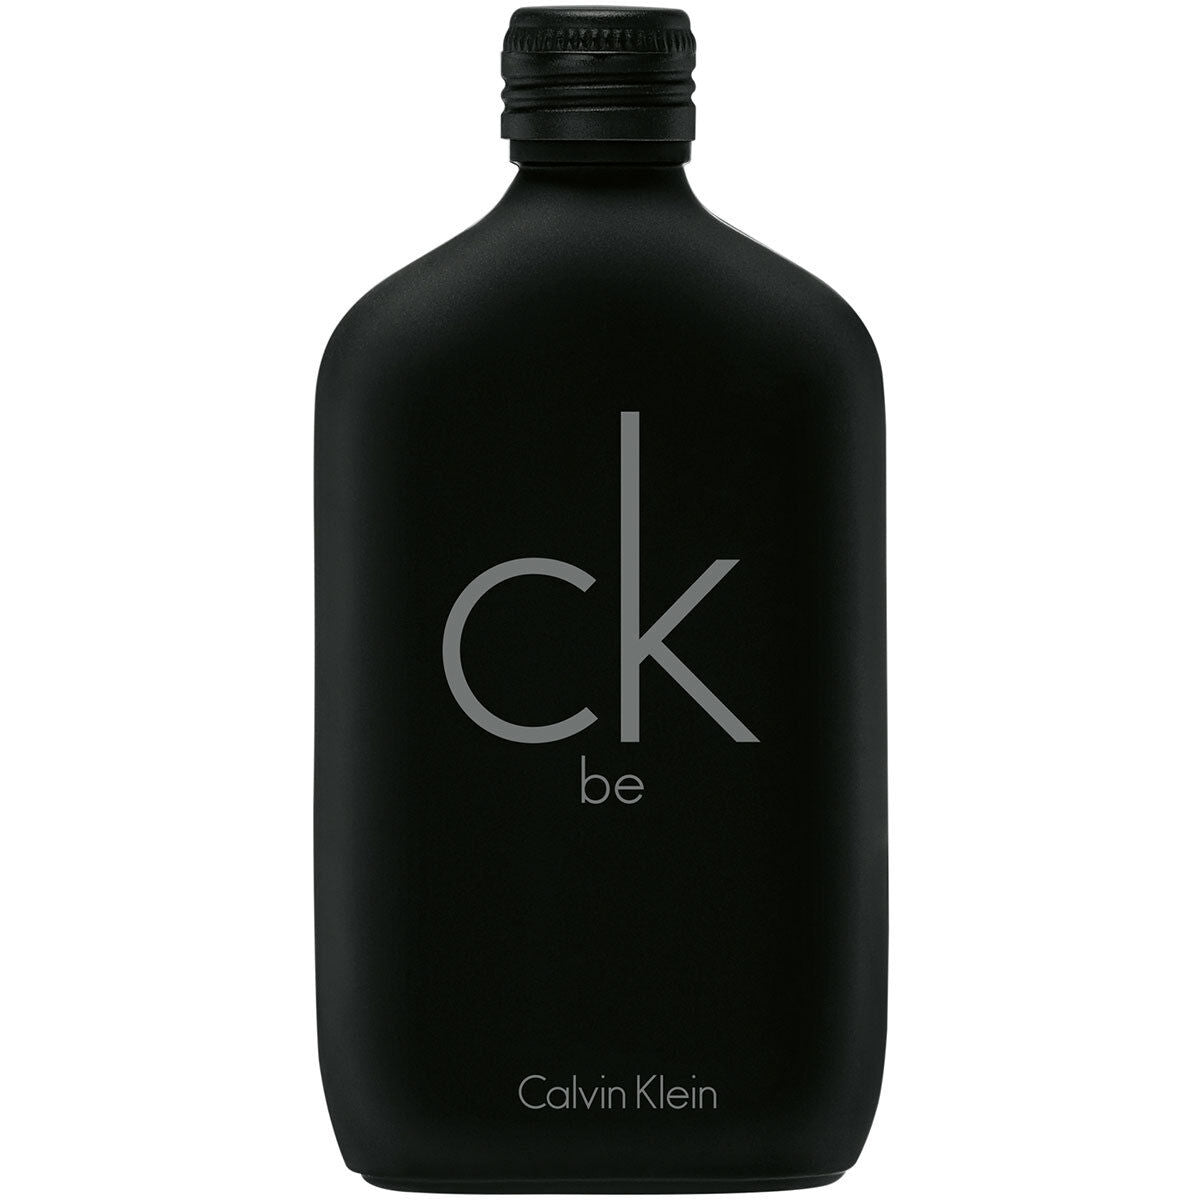 Calvin Klein CK Be Eau De Toilette Spray 100ml - LookincredibleCalvin Klein88300104406